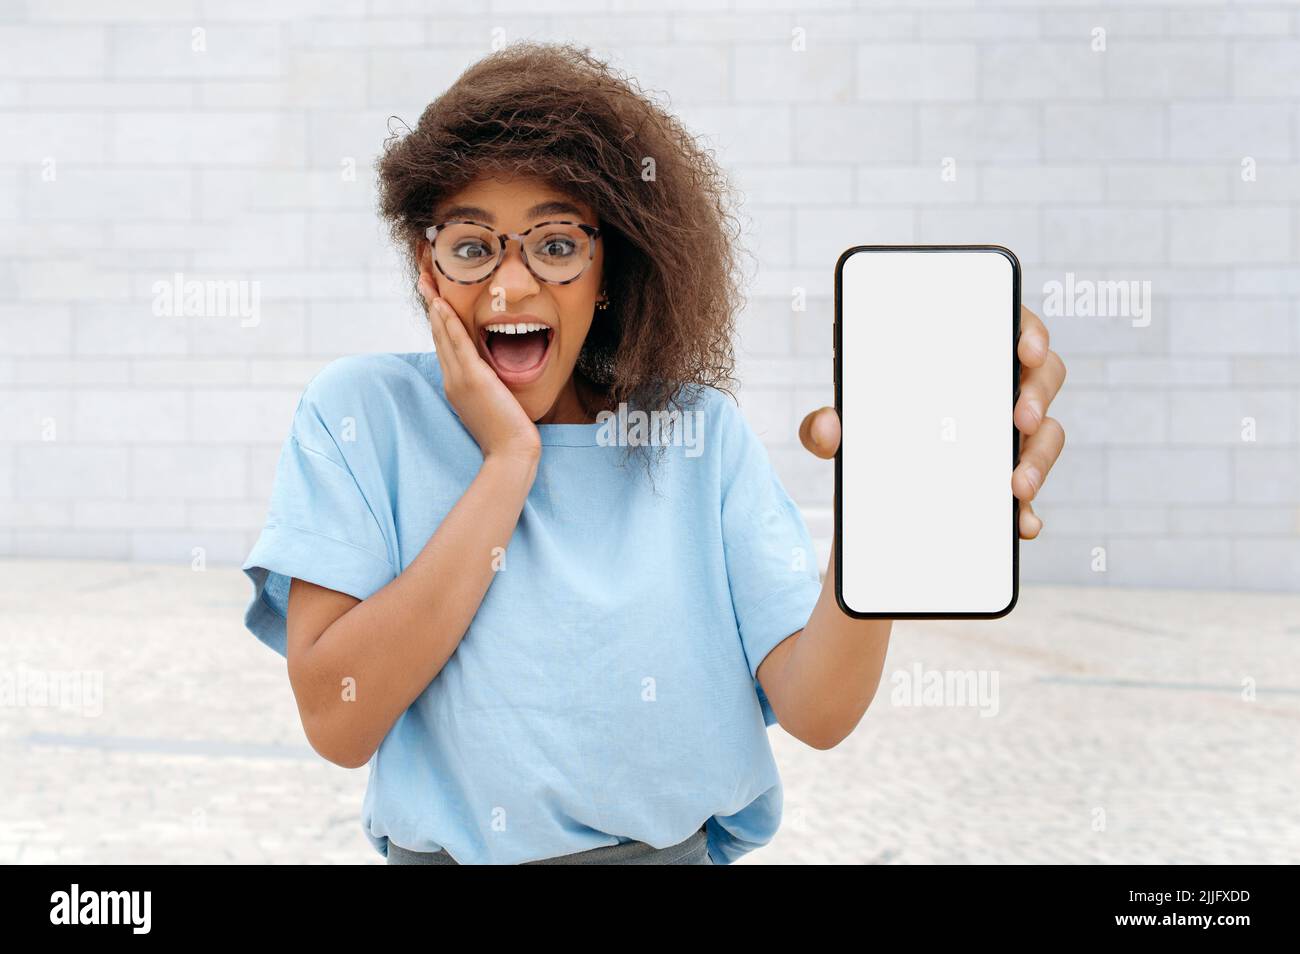 Aufgeregt überrascht freudige afroamerikanische lockige junge Frau, die draußen stand und ihr Smartphone mit weißem Mockup-Bildschirm, Platz für Werbung, Präsentation zeigte, schockiert auf die Kamera aussagt Stockfoto